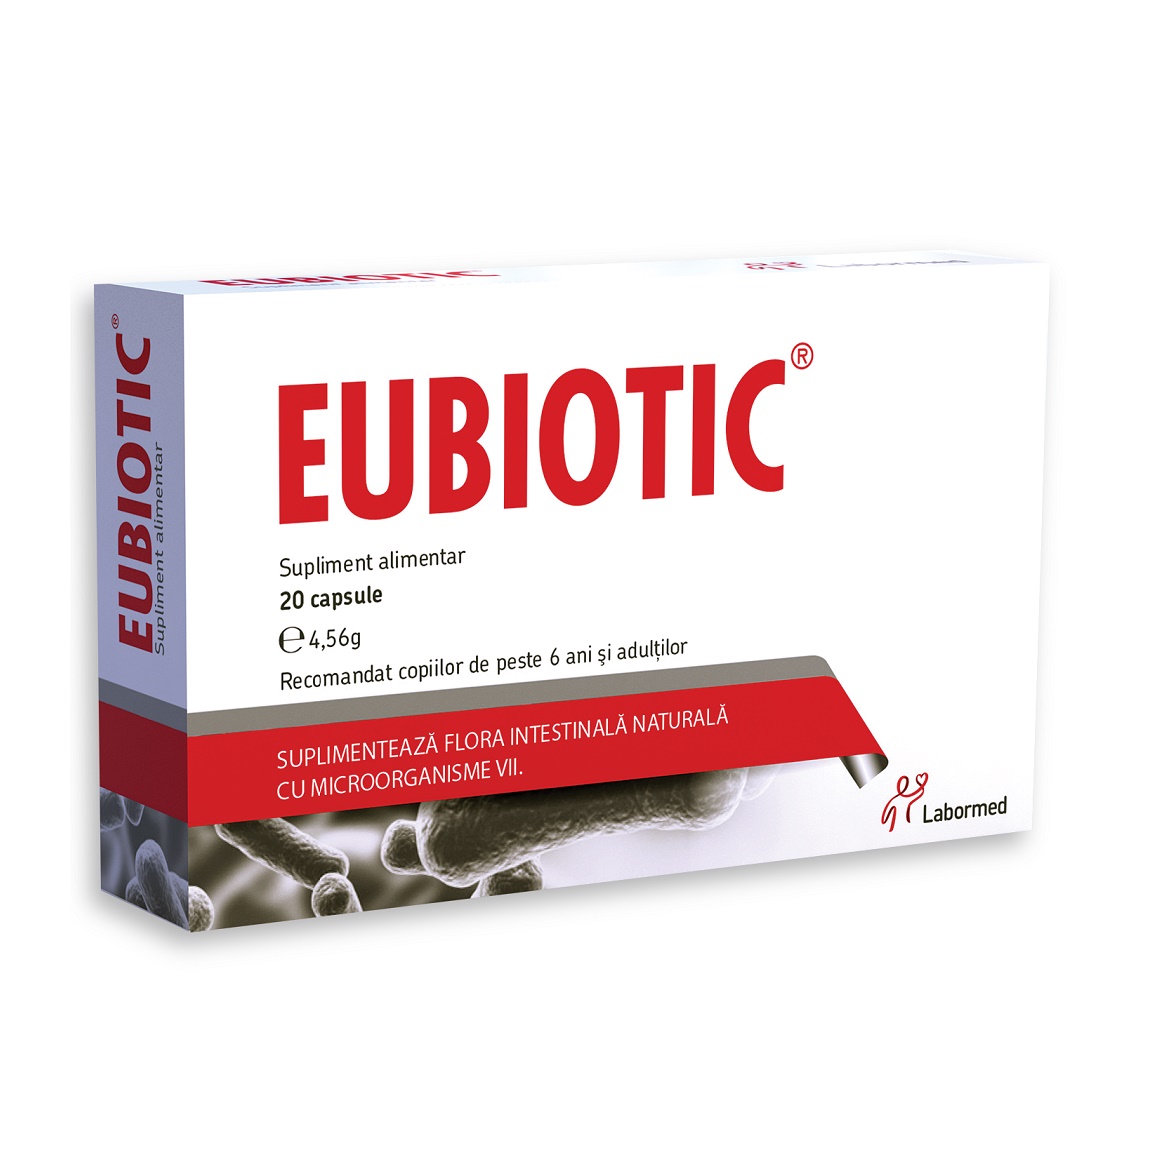 Probiotice si Prebiotice - Eubiotic, 20 capsule, Labormed, sinapis.ro